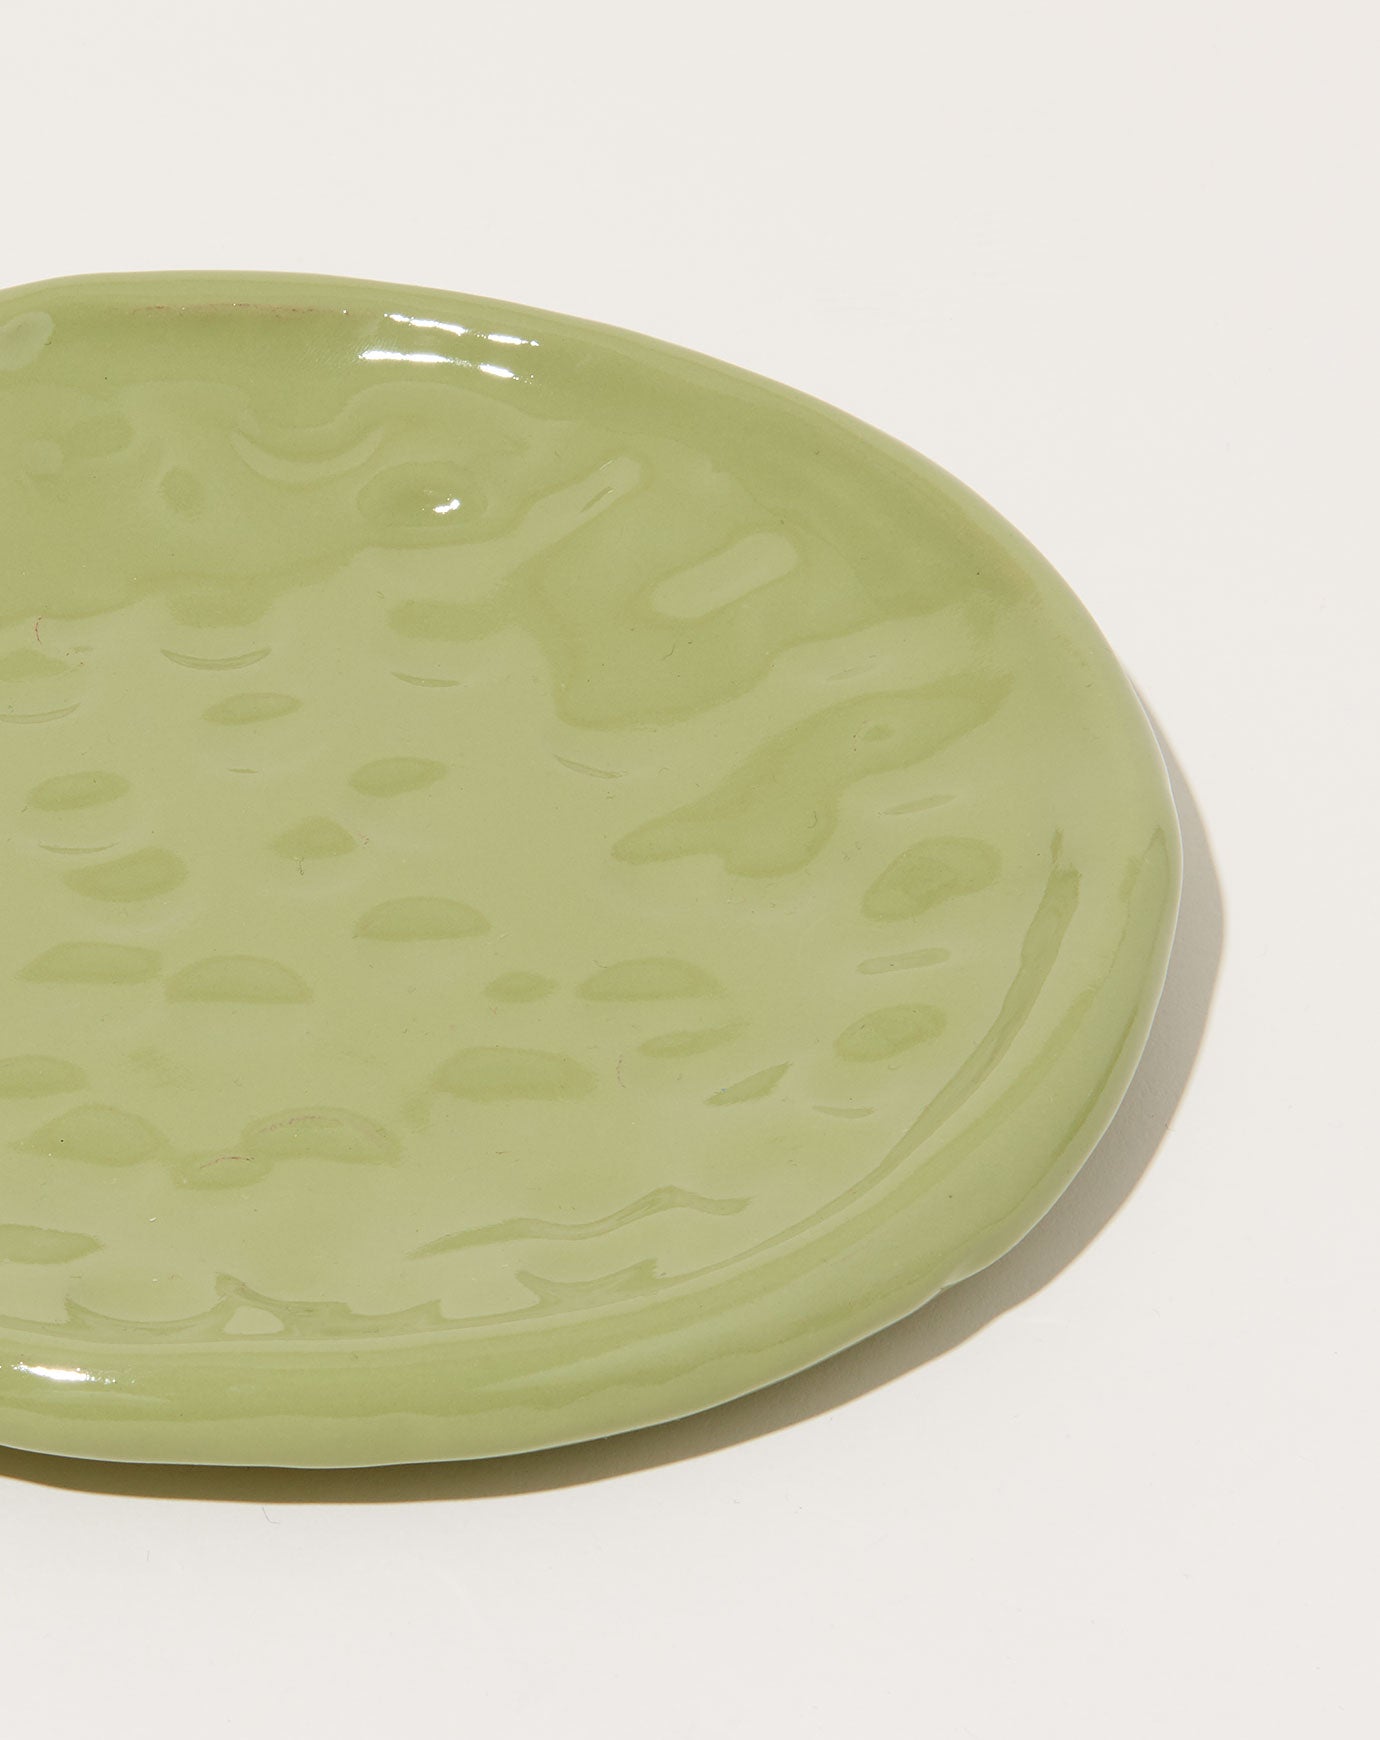 Sean Gerstley Lunch Plate in Froggy Green